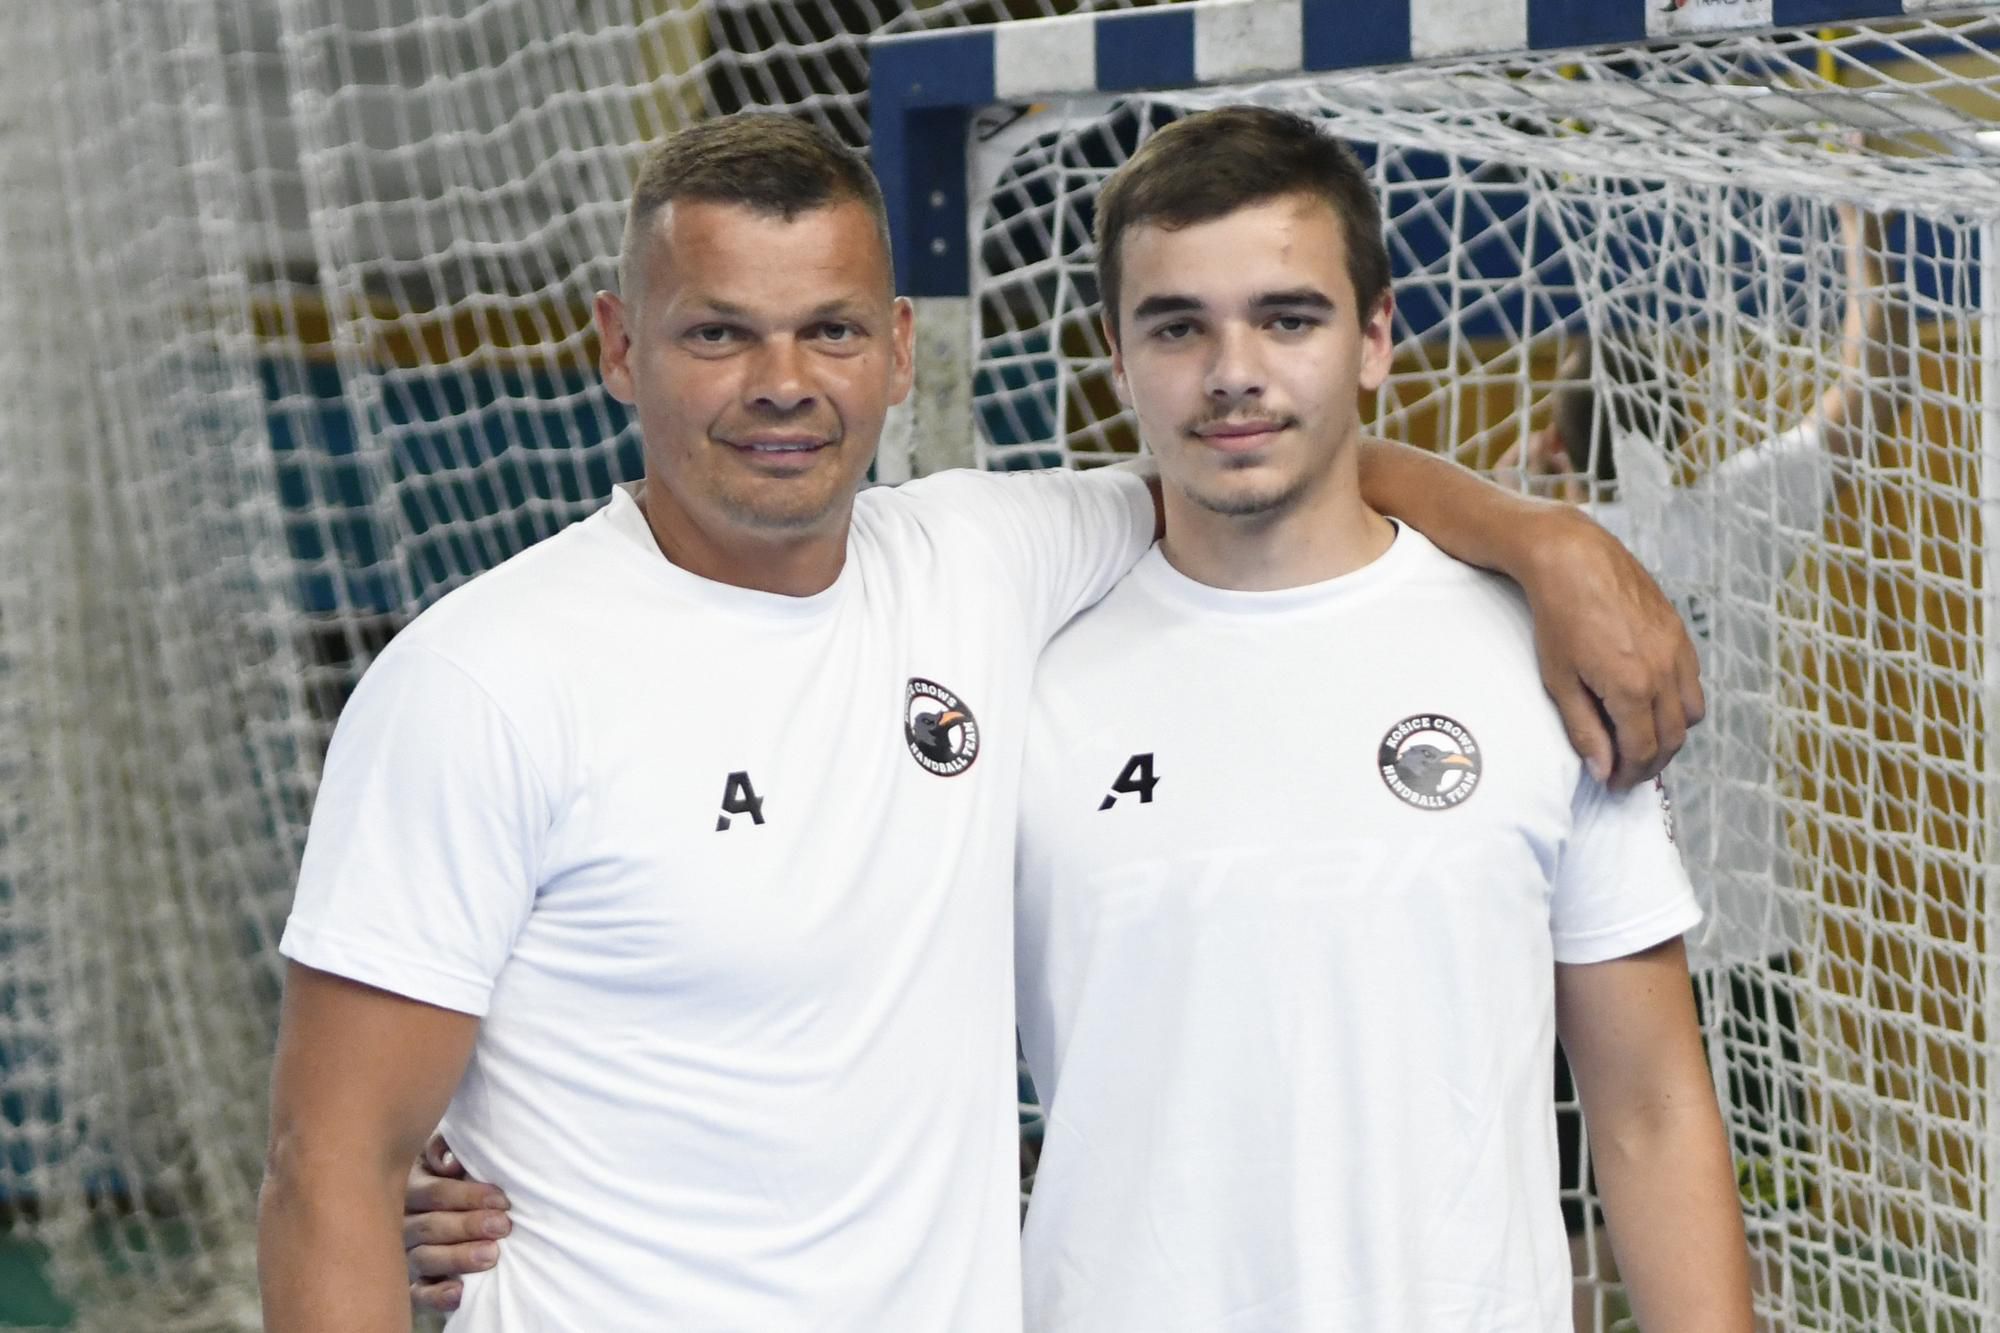 Vľavo hrajúci tréner, bývalý hádzanársky reprezentant SR Radoslav Antl, vpravo jeho syn Radoslav Antl mladší.